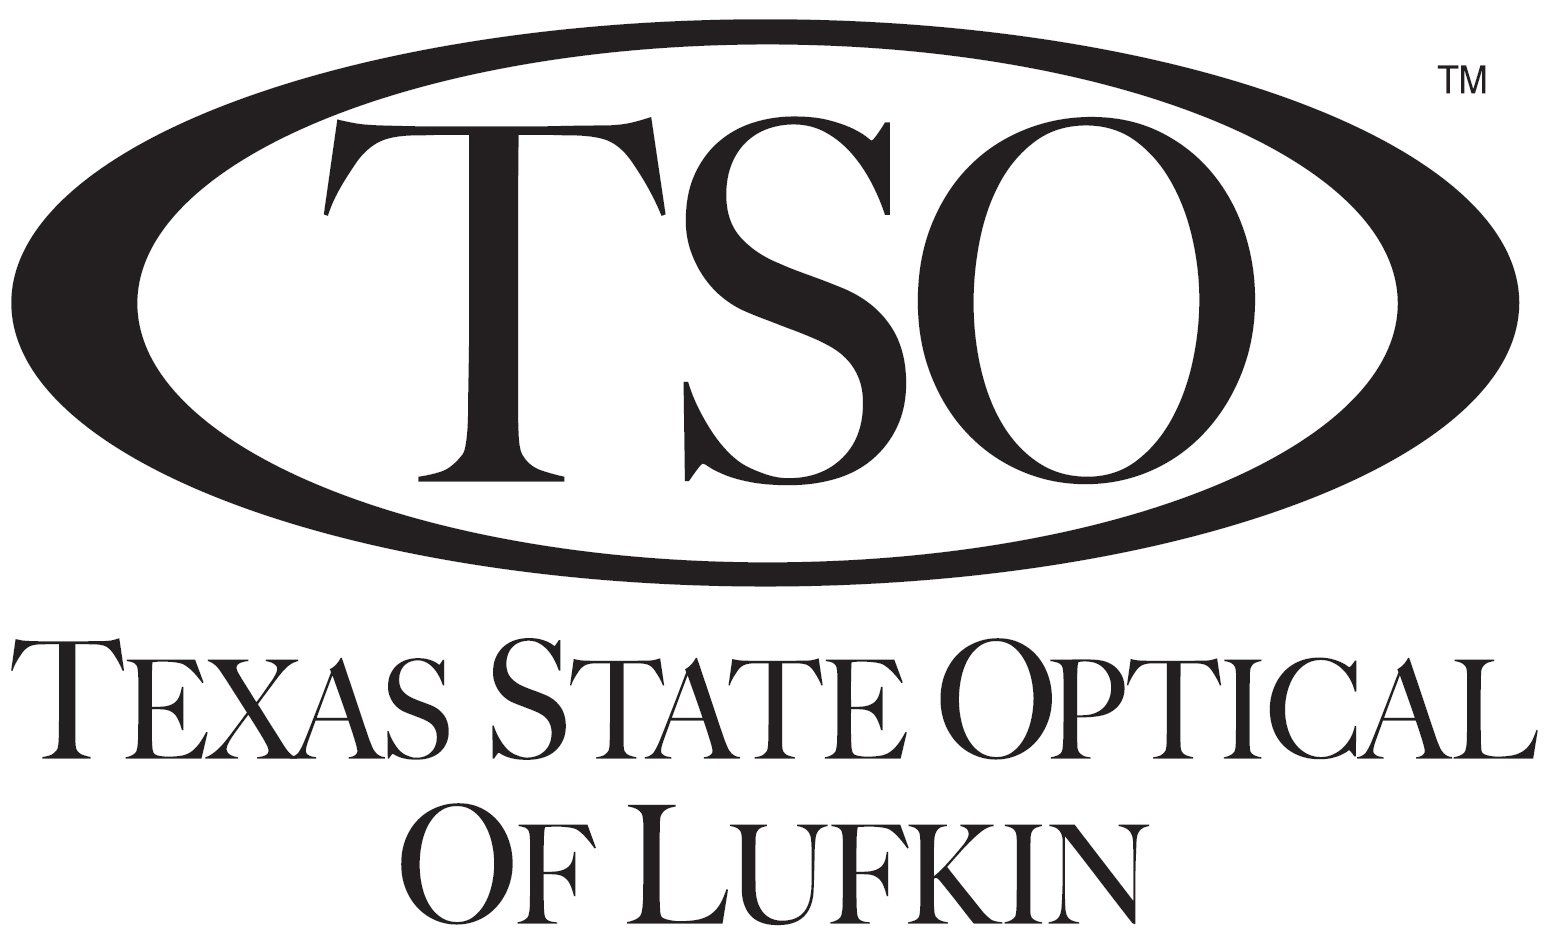 Texas State Optical of Lufkin - Logo